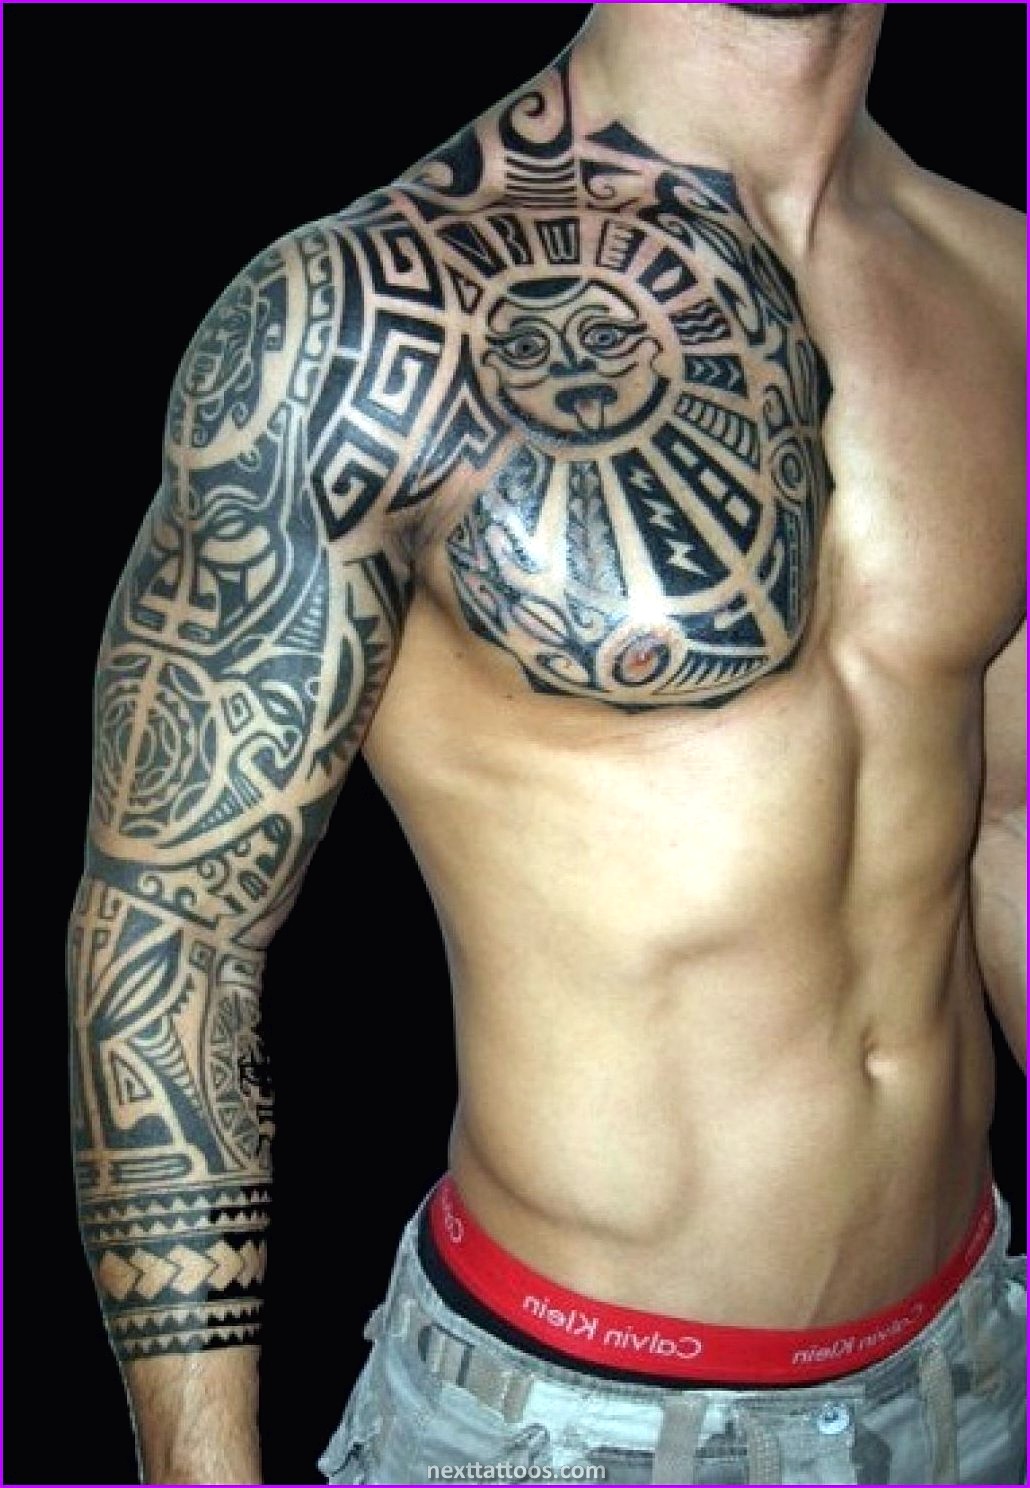 Tattoo Sleeve Ideas For Guys